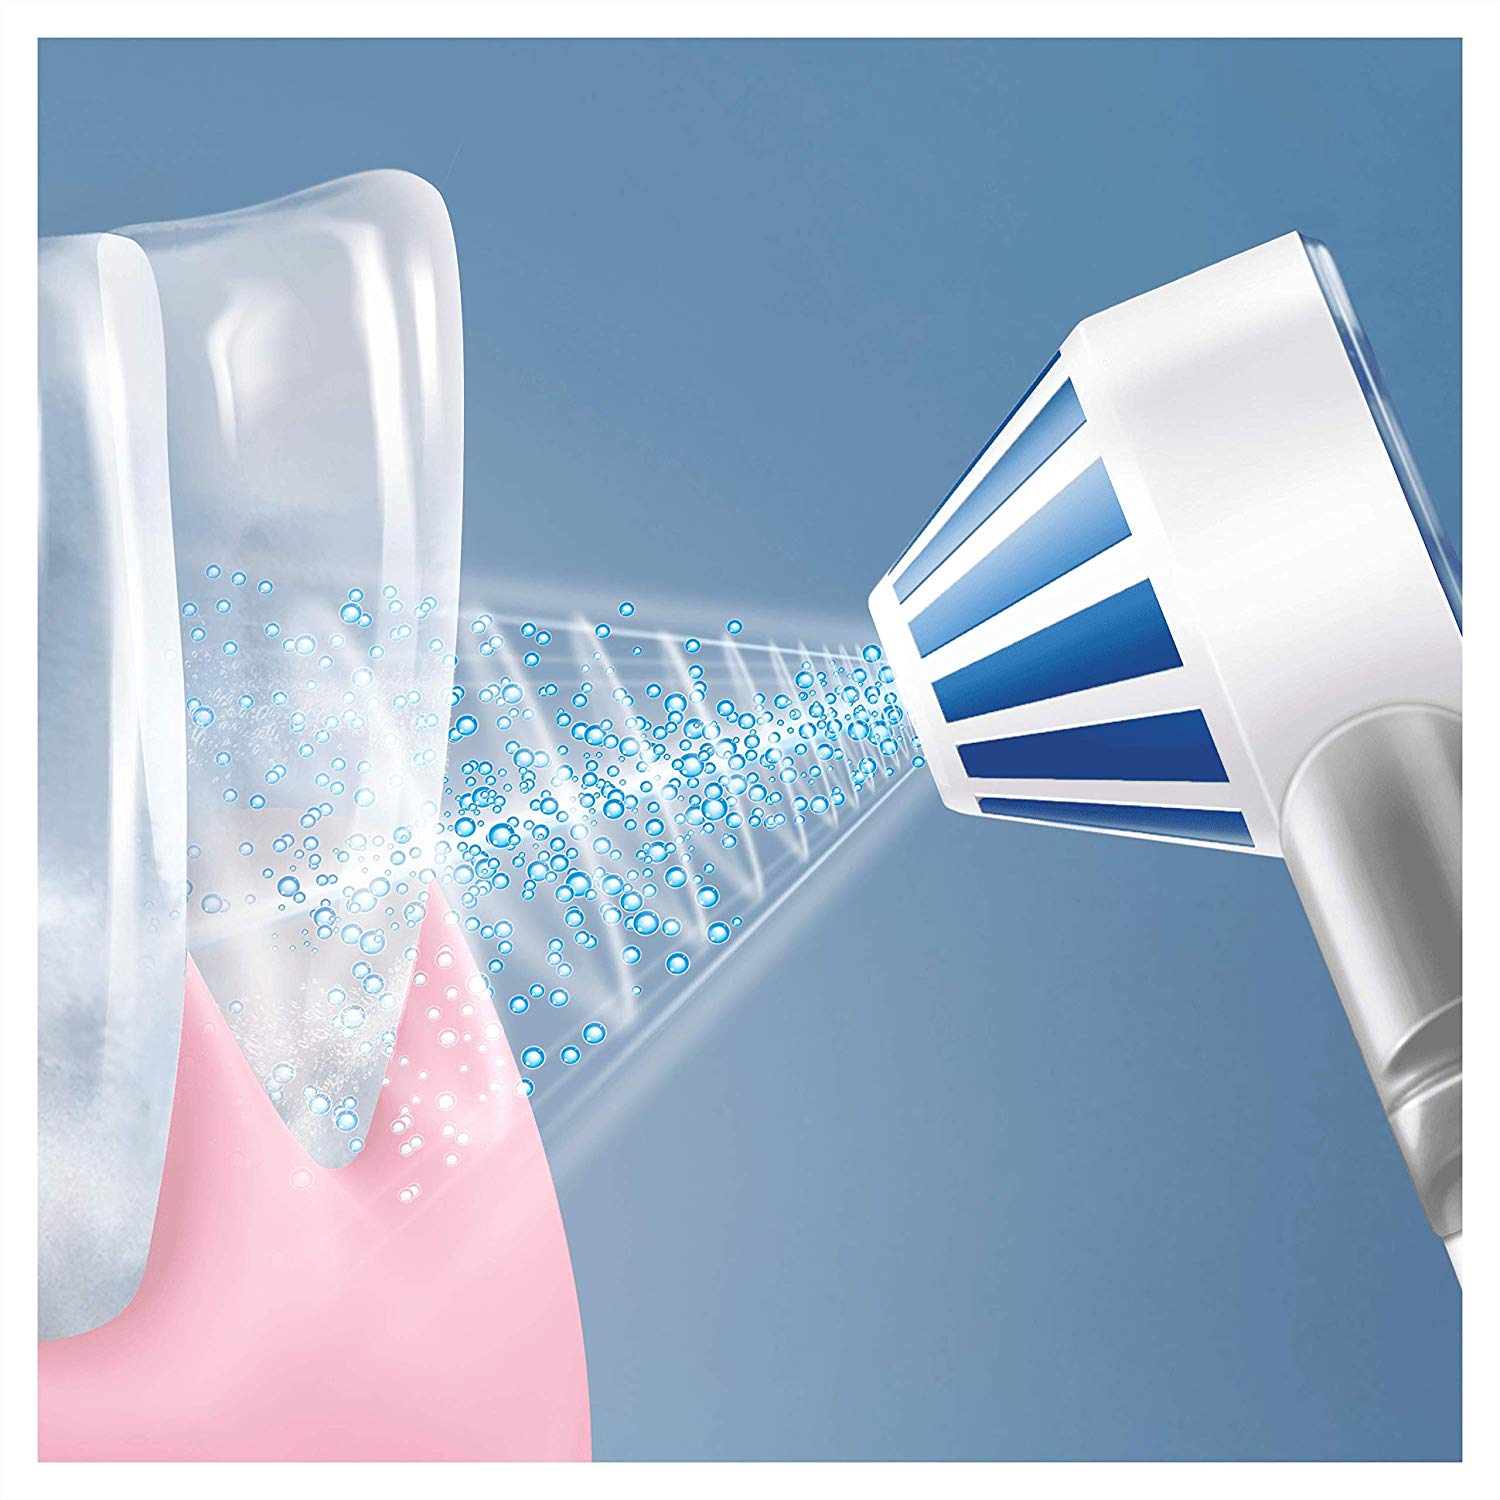 Tăm nước Oral-B Aquacare 4 giúp cải thiện sức khỏe của nướu răng